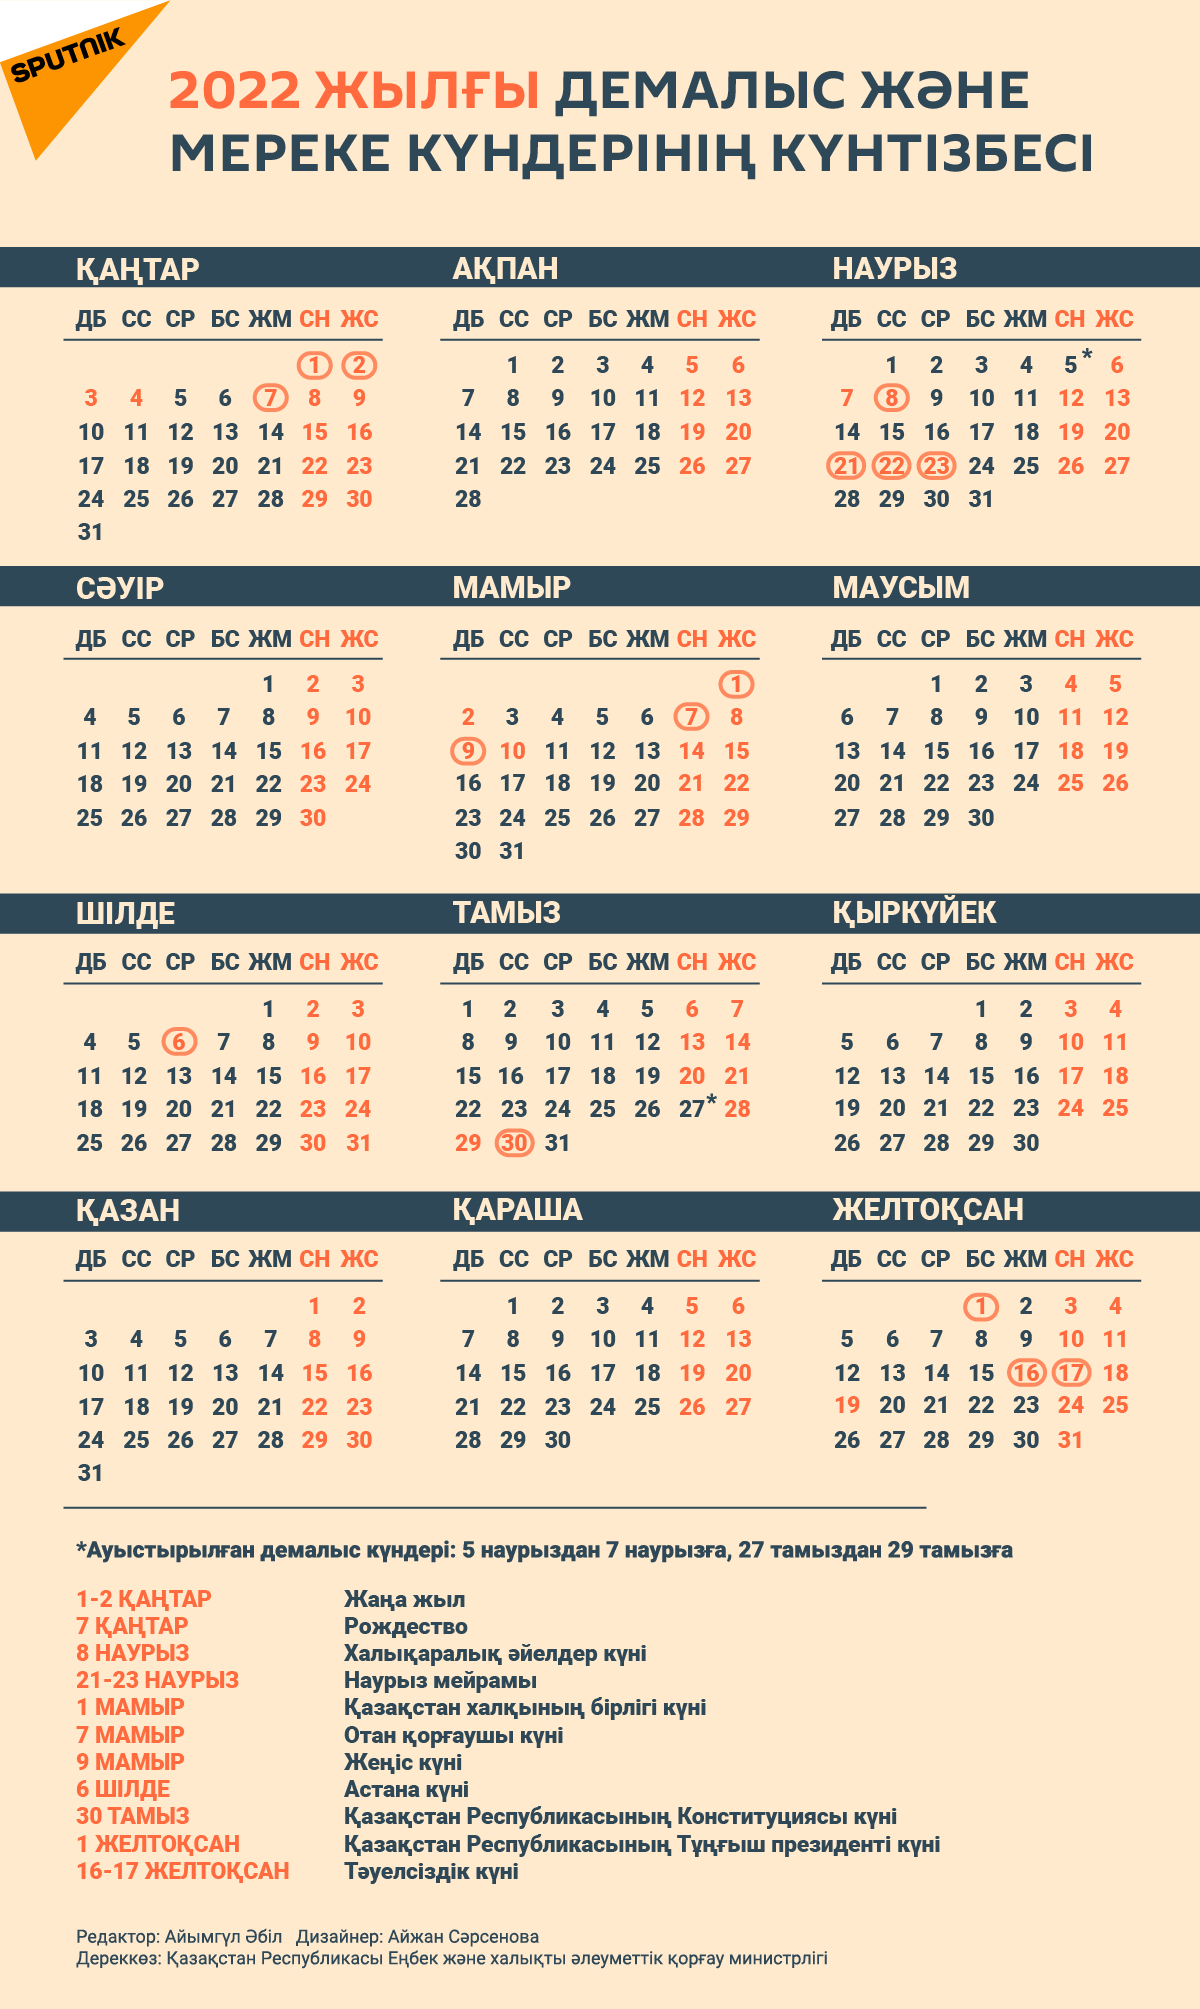 2022 жылғы демалыс және мереке күнтізбесі - Sputnik Қазақстан, 1920, 21.10.2021